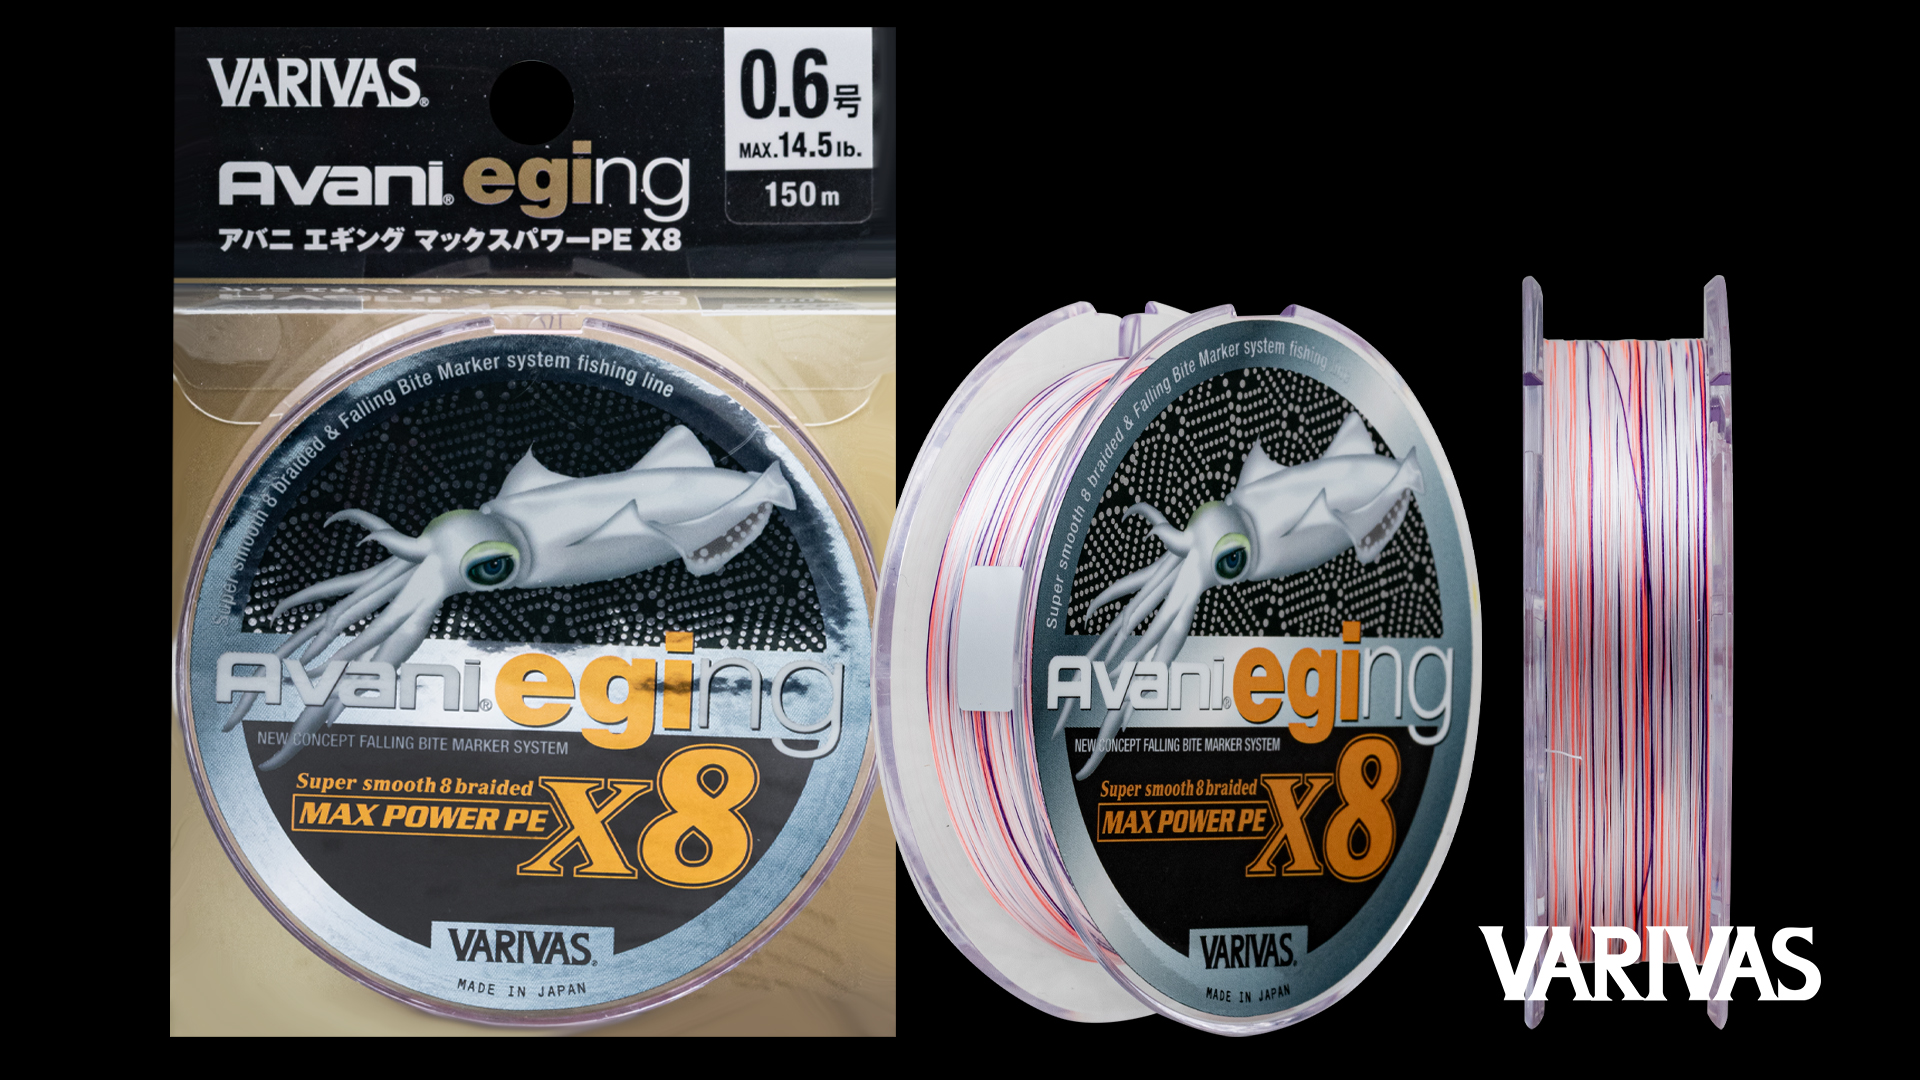 VARIVAS AVANI EGING X8 – Way Of Fishing